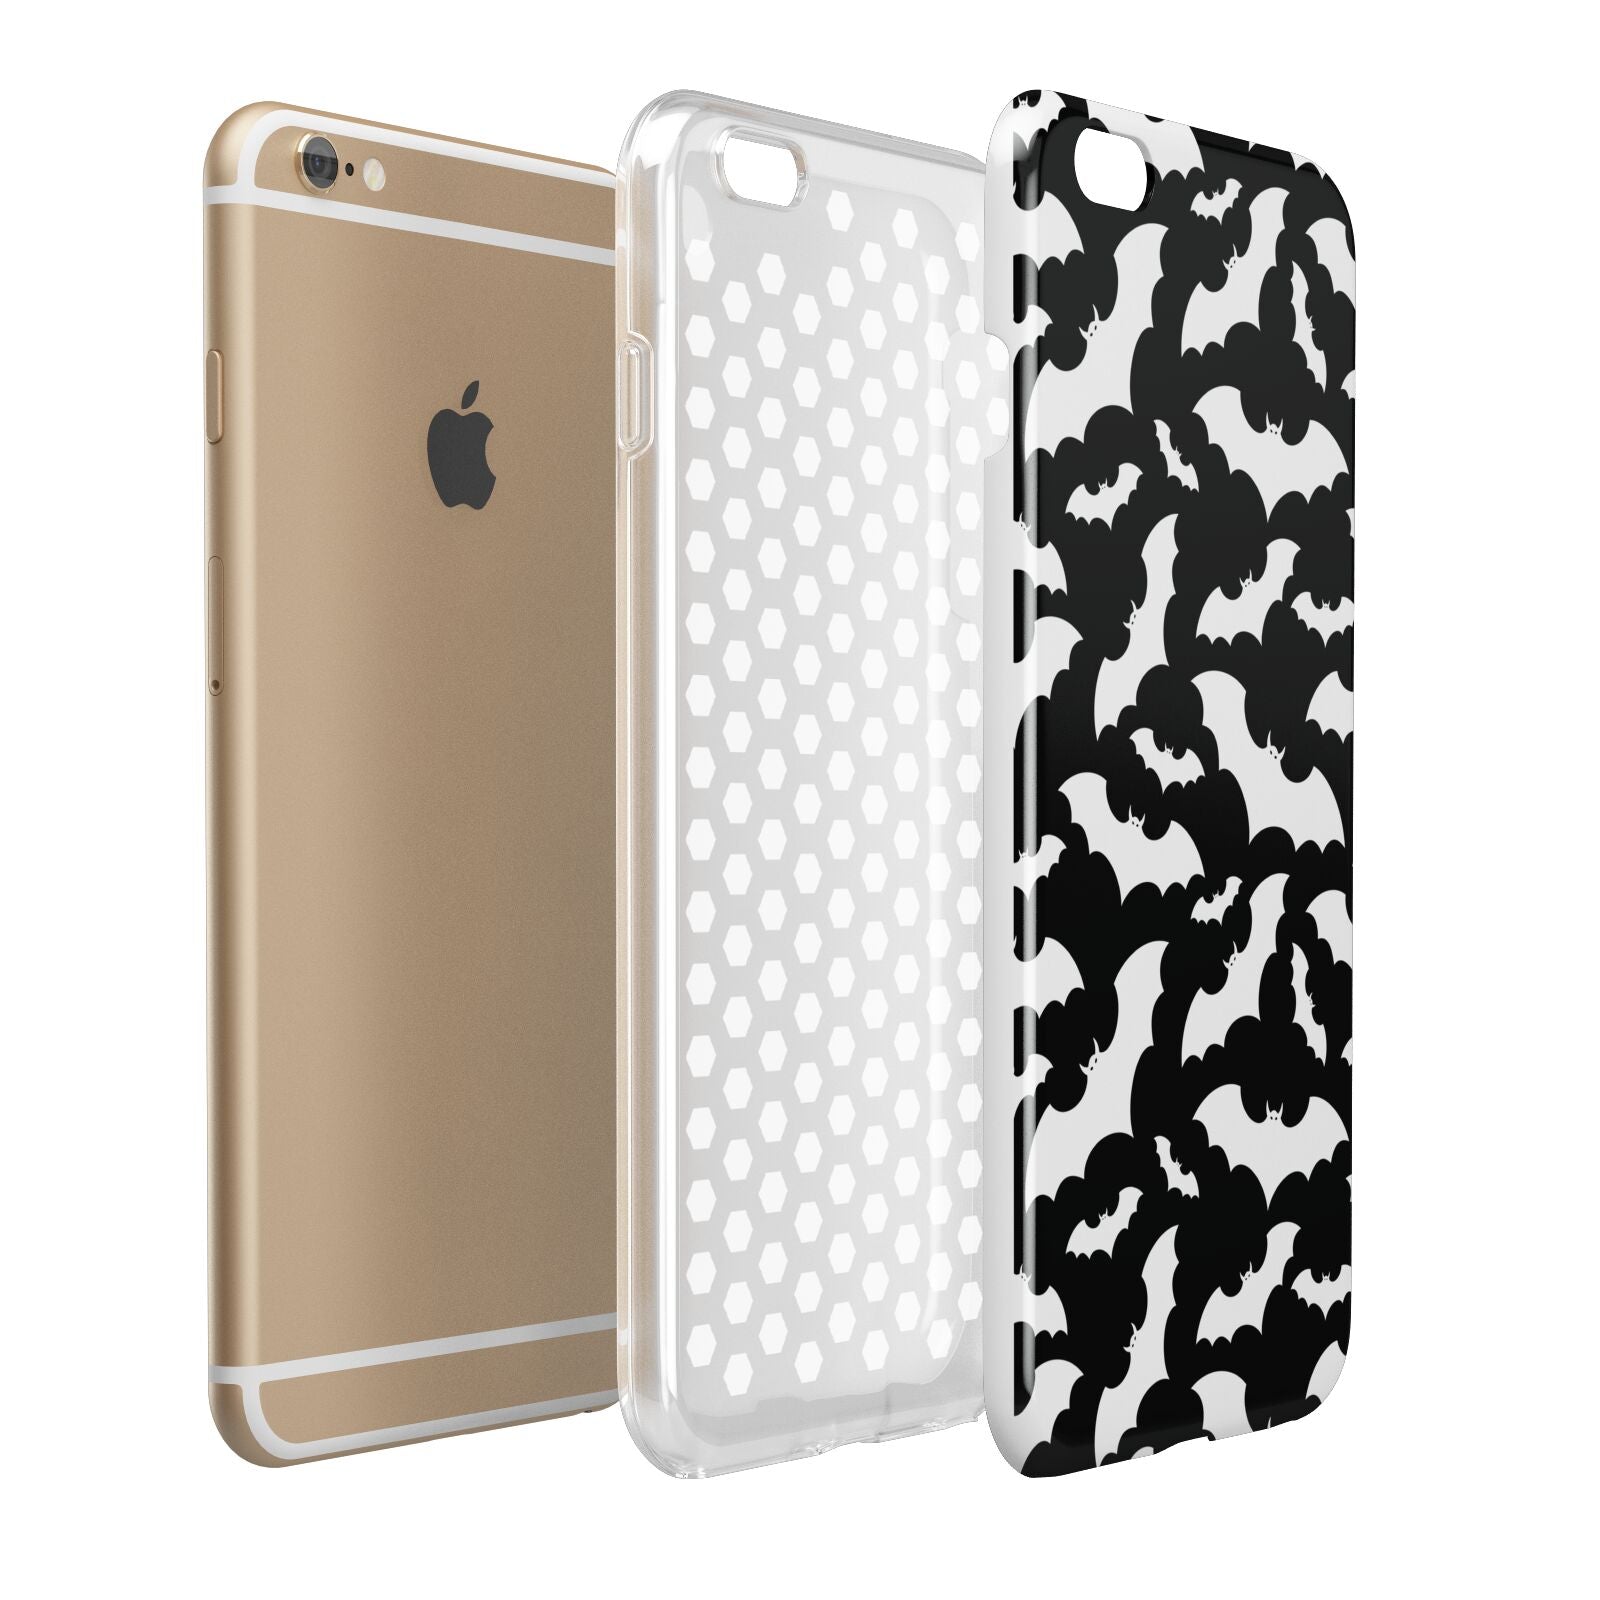 Black and White Bats Apple iPhone 6 Plus 3D Tough Case Expand Detail Image